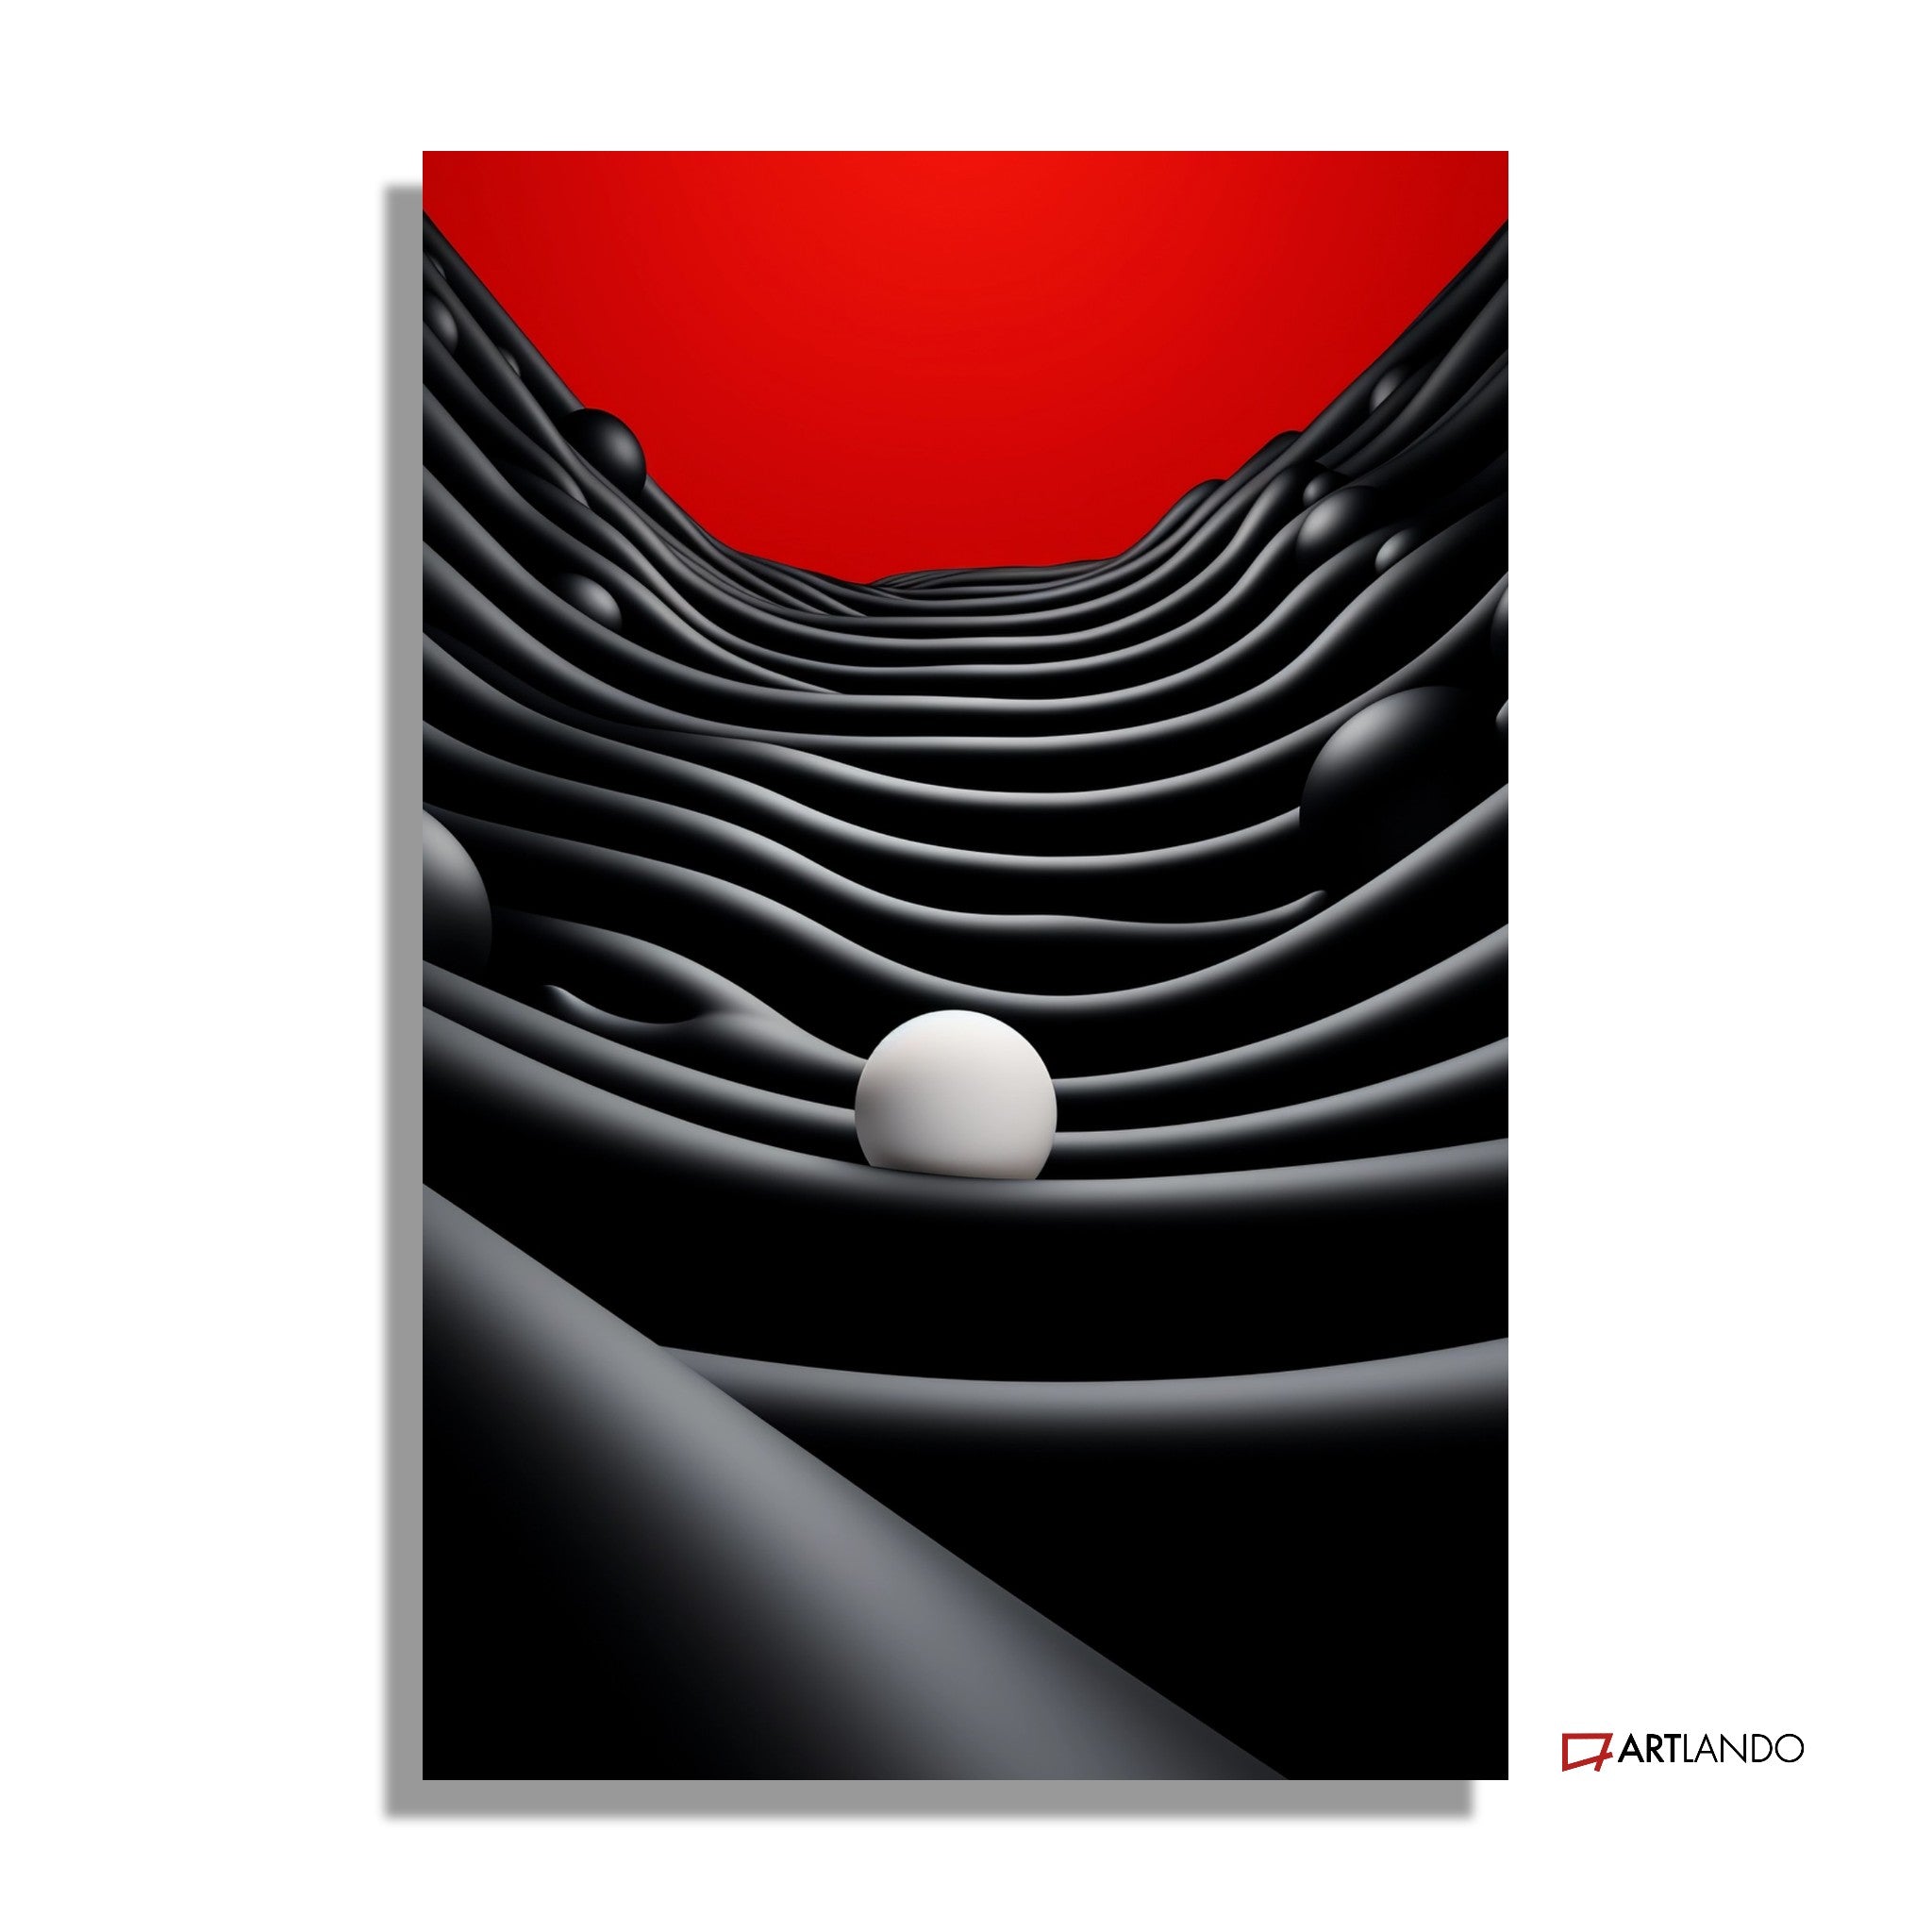 Dreidimensionale moderne Kunst in Rot Weiß Schwarz